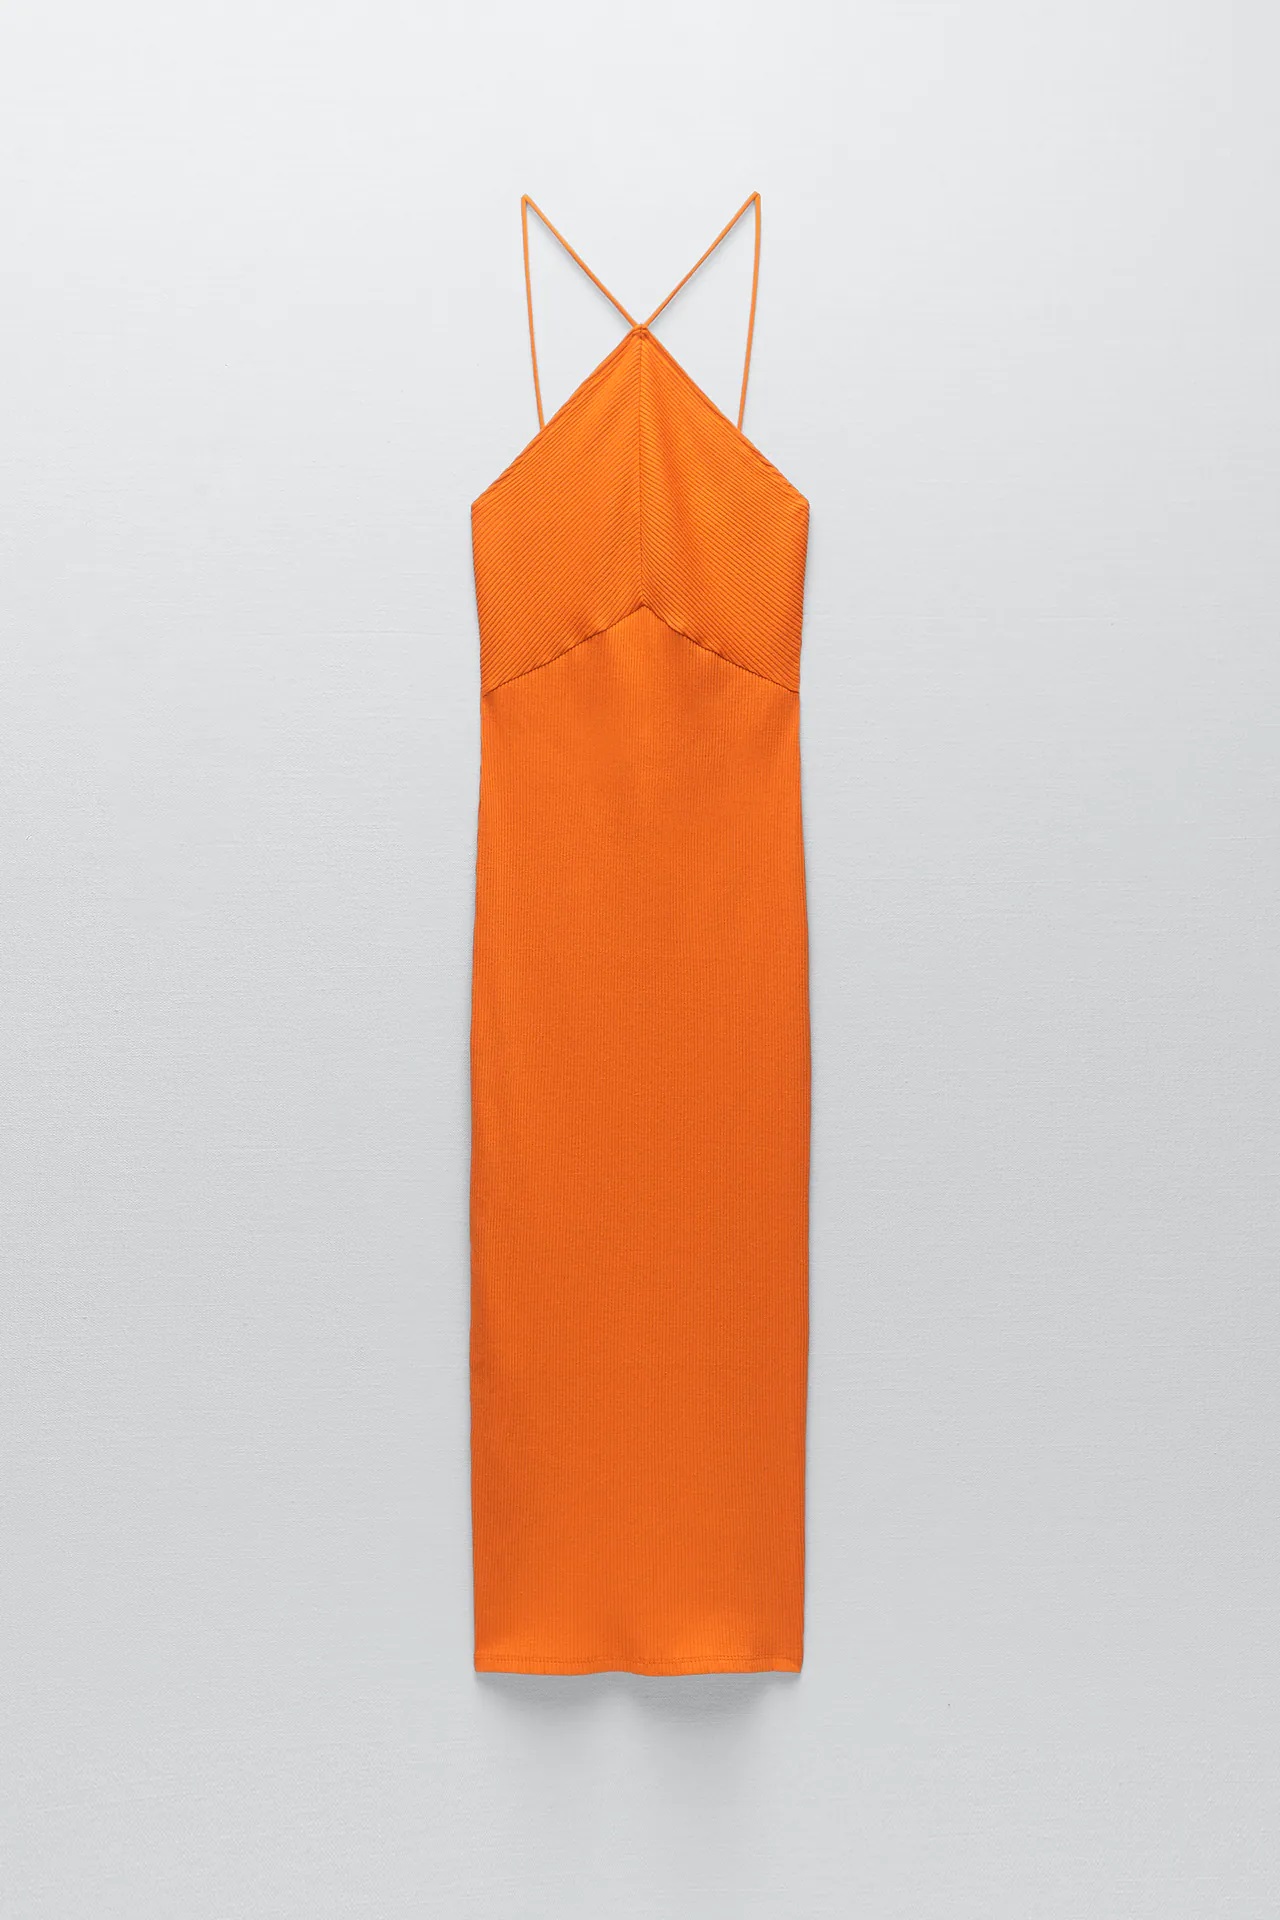 Las influencers ya han elegido vestido de Zara, este es el más bonito, barato y viral